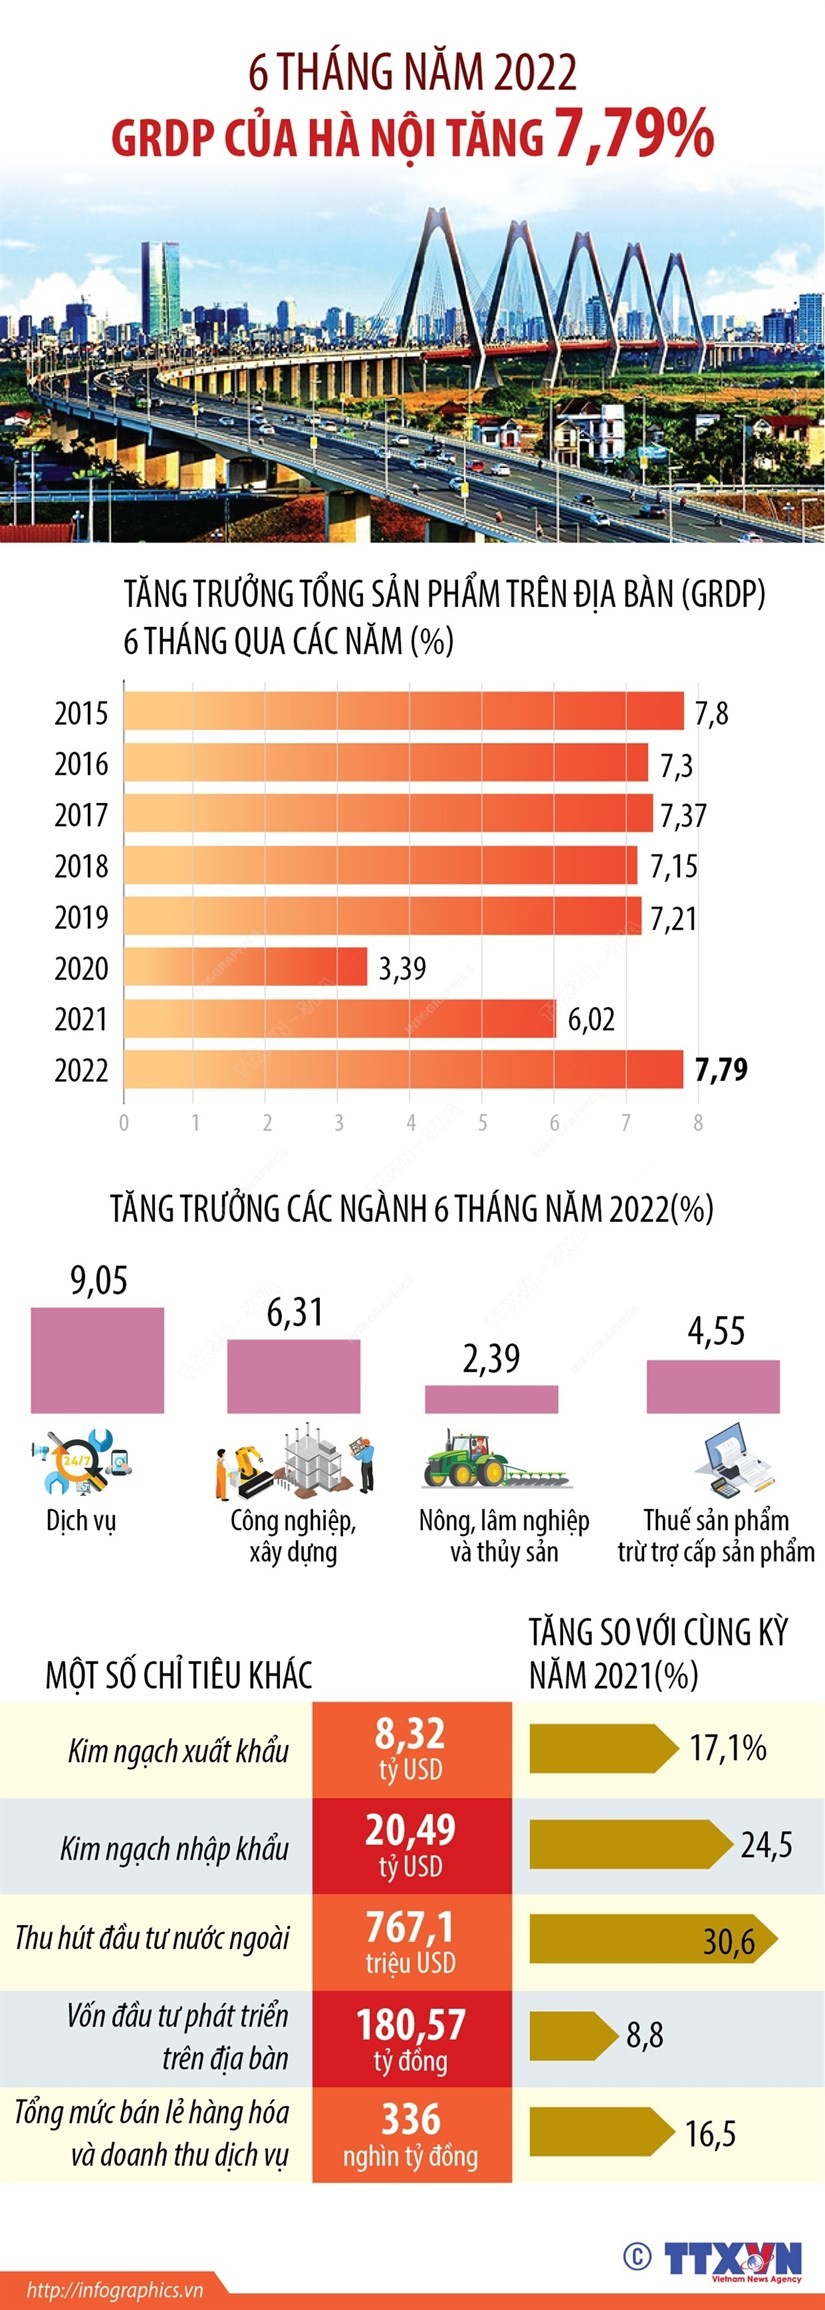 GRDP của Hà Nội tăng 7,79% trong 6 tháng năm 2022